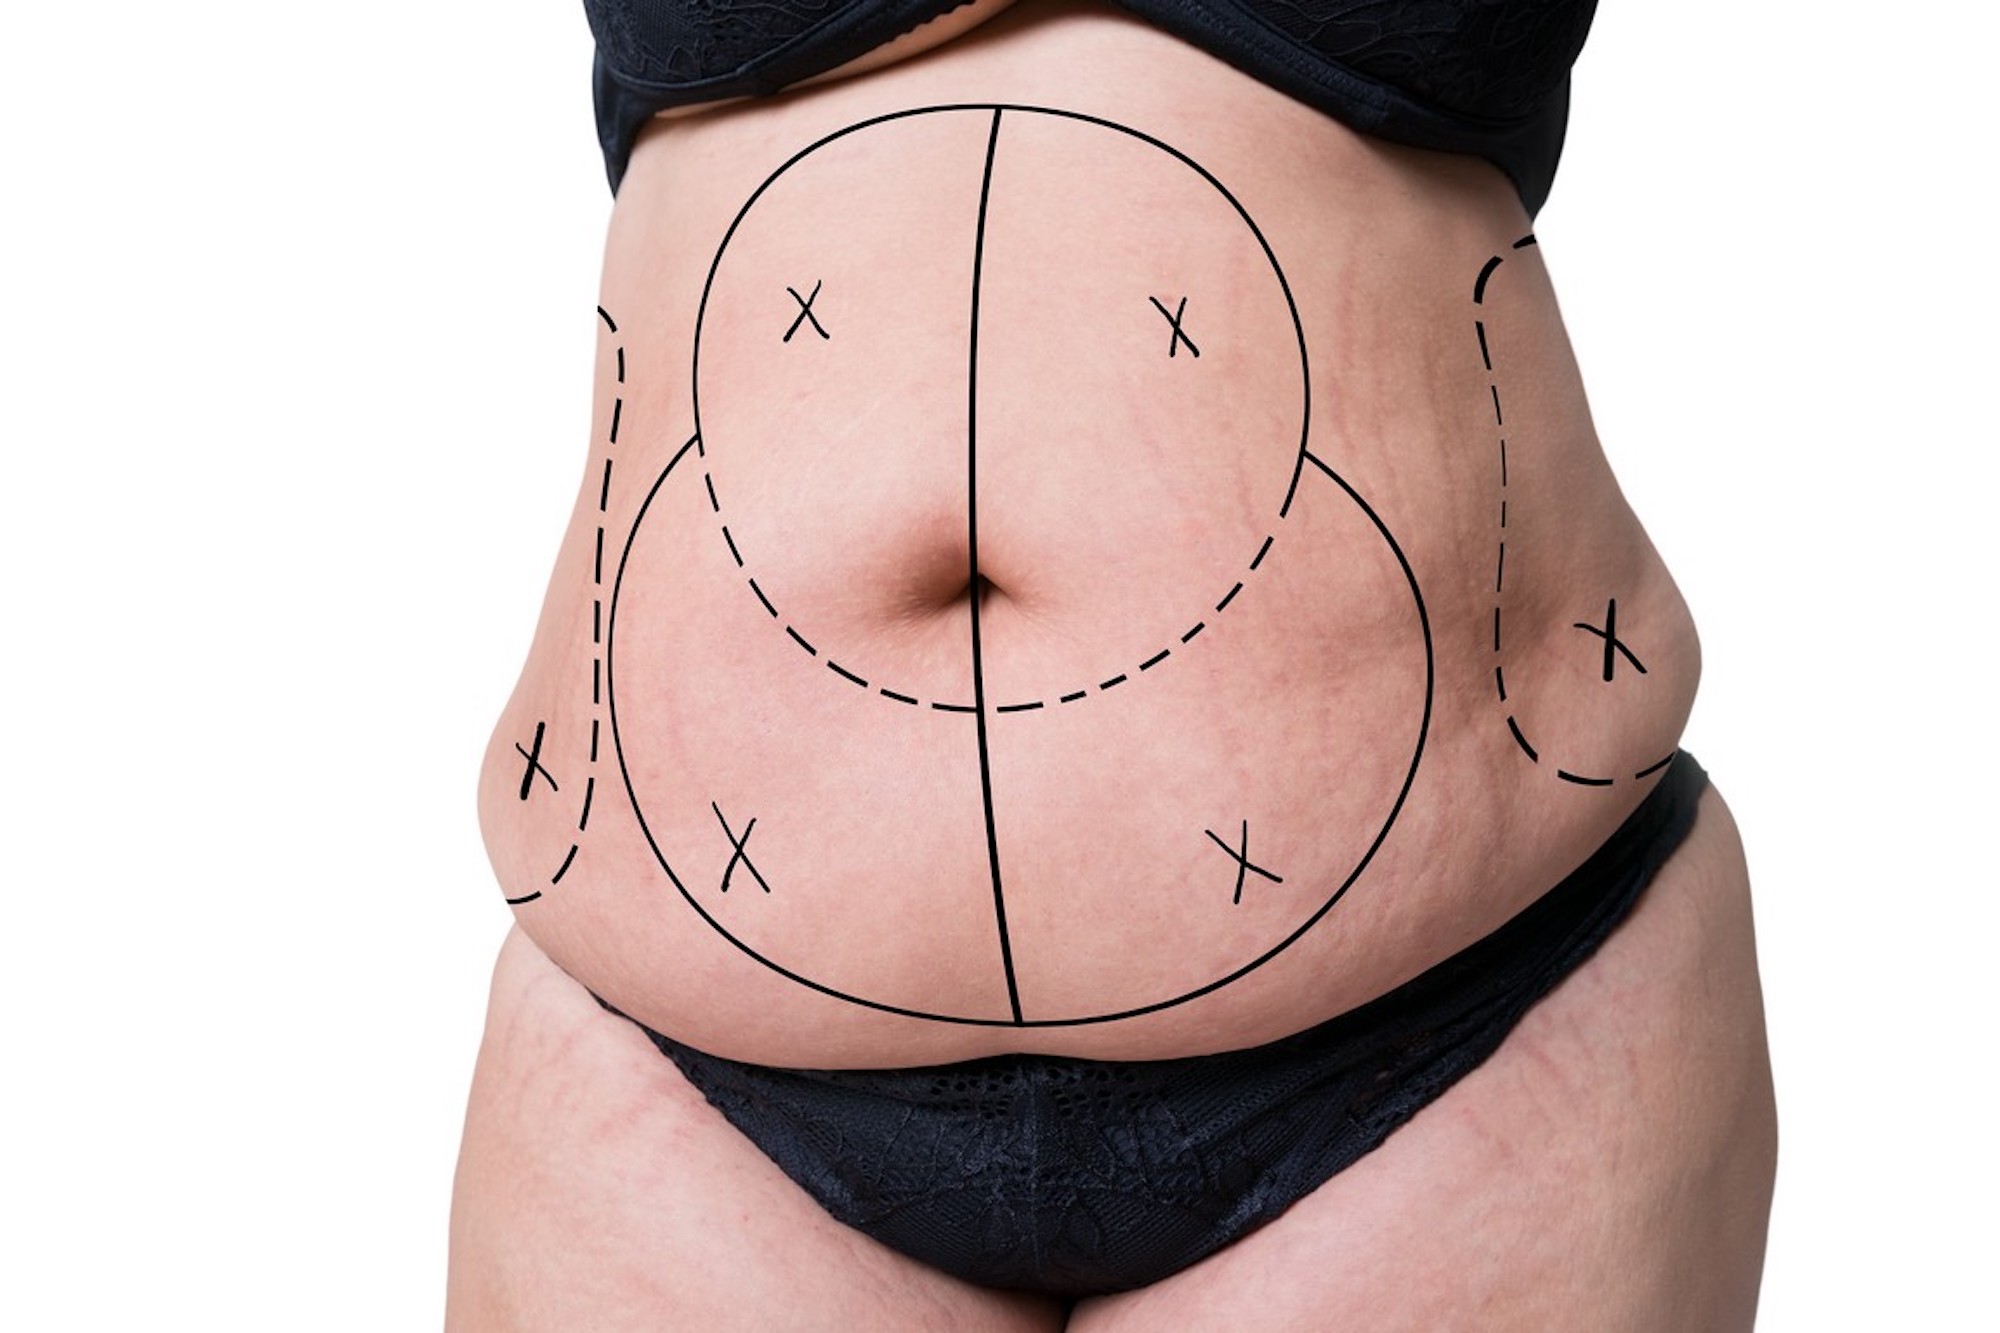 Preguntas frecuentes sobre la abdominoplastia o cirugia estetica